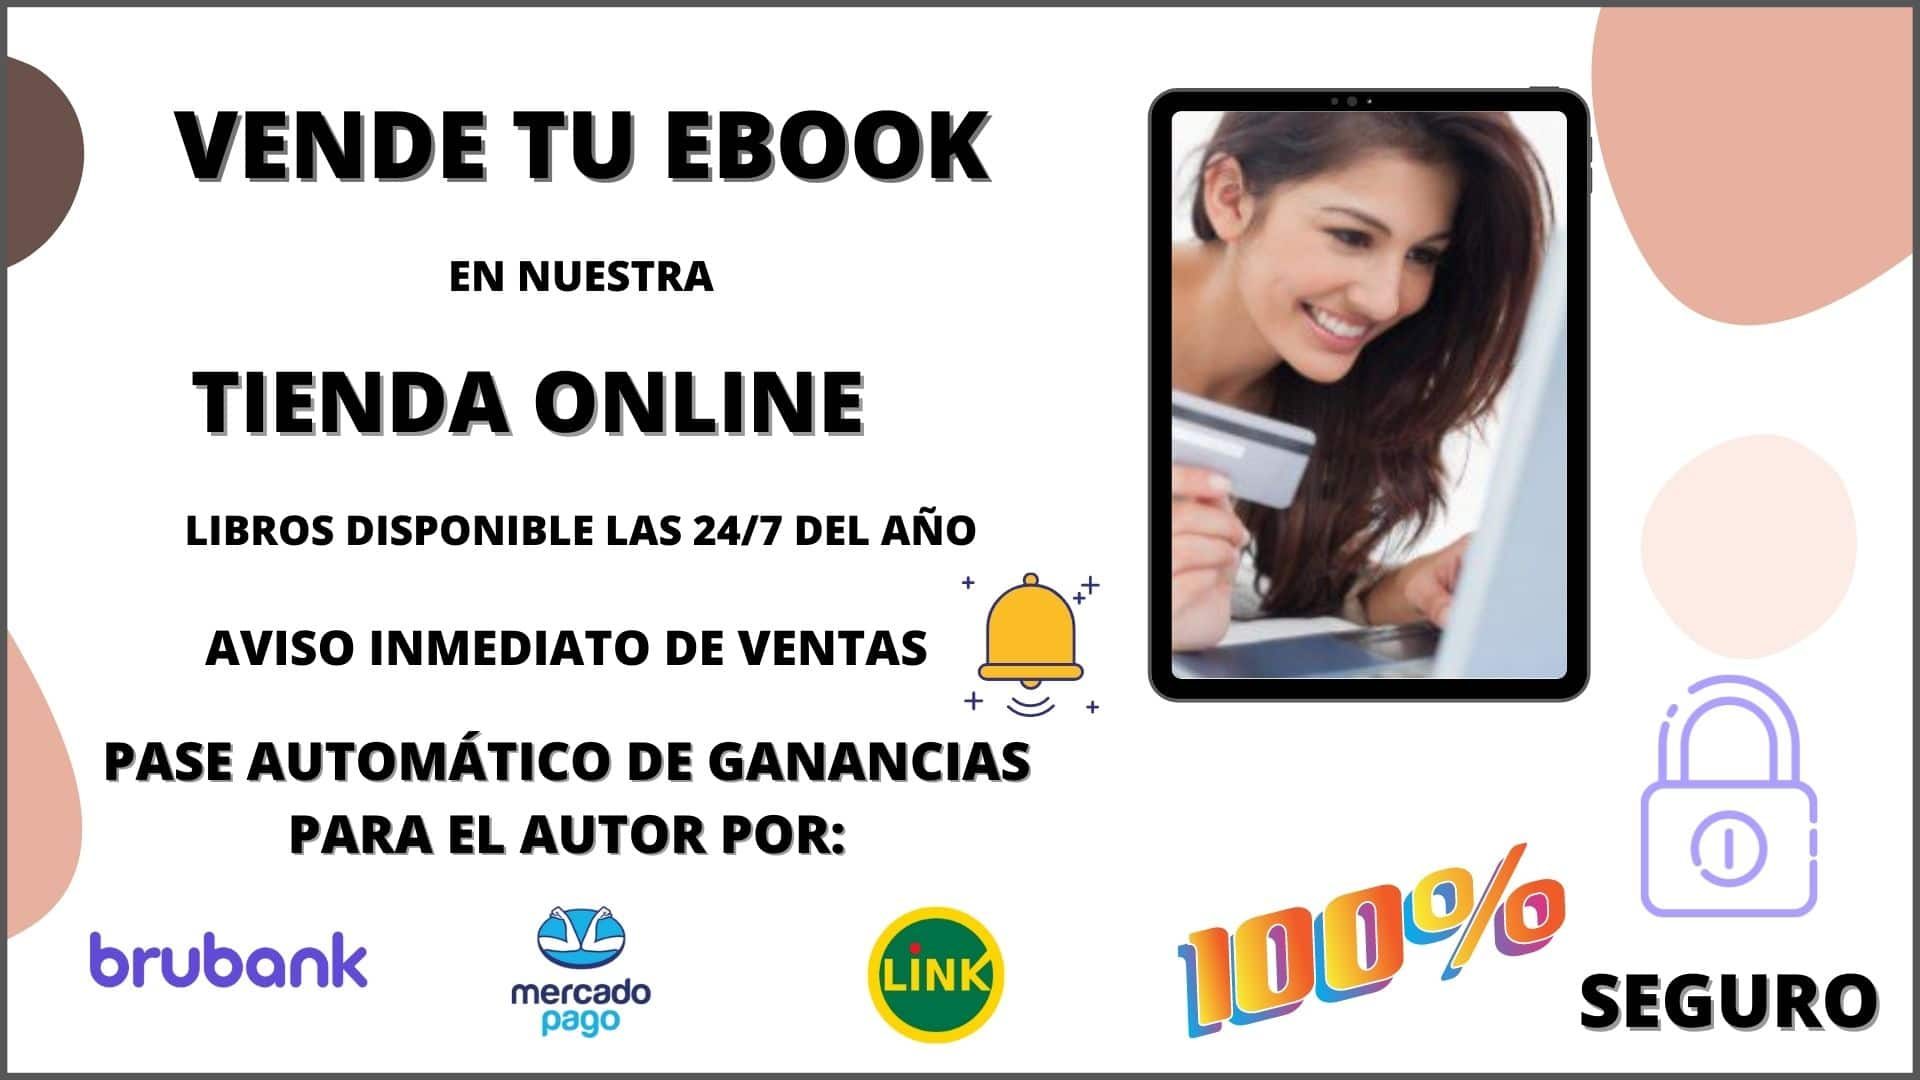 Publicar Ebook - libro digital - Editorial Autores de Argentina